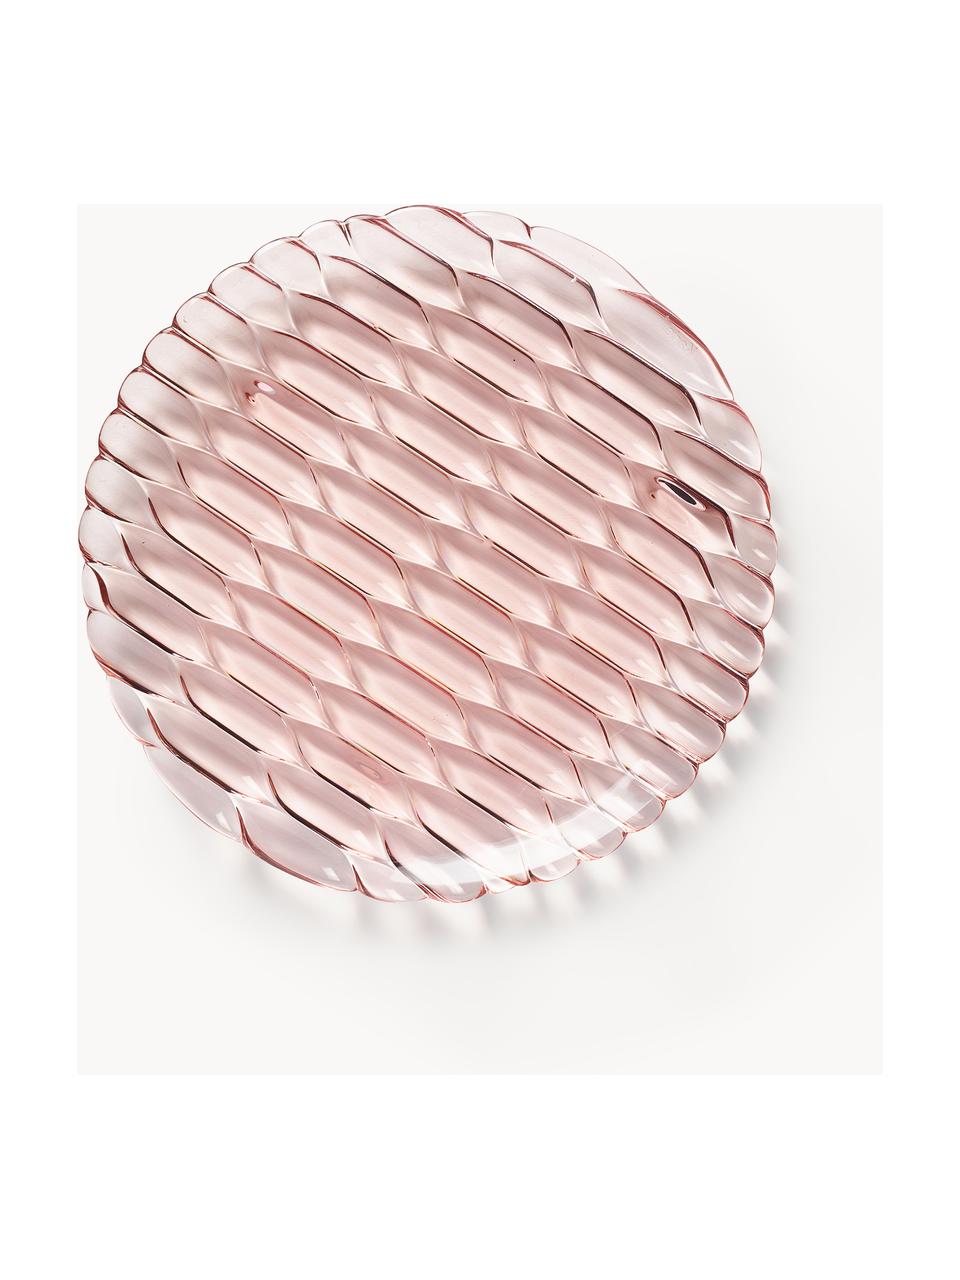 Assiettes à dessert avec motif texturé Jellies, 4 pièces, Plastique, Rose pâle, Ø 22 cm